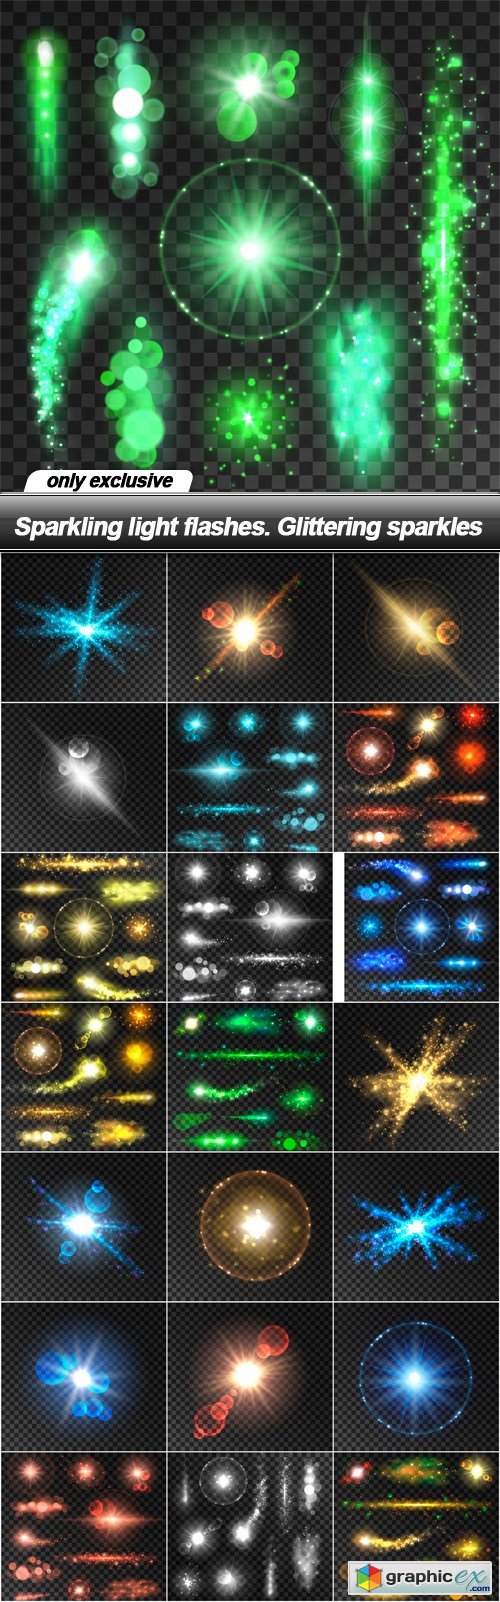 Sparkling light flashes. Glittering sparkles - 22 EPS